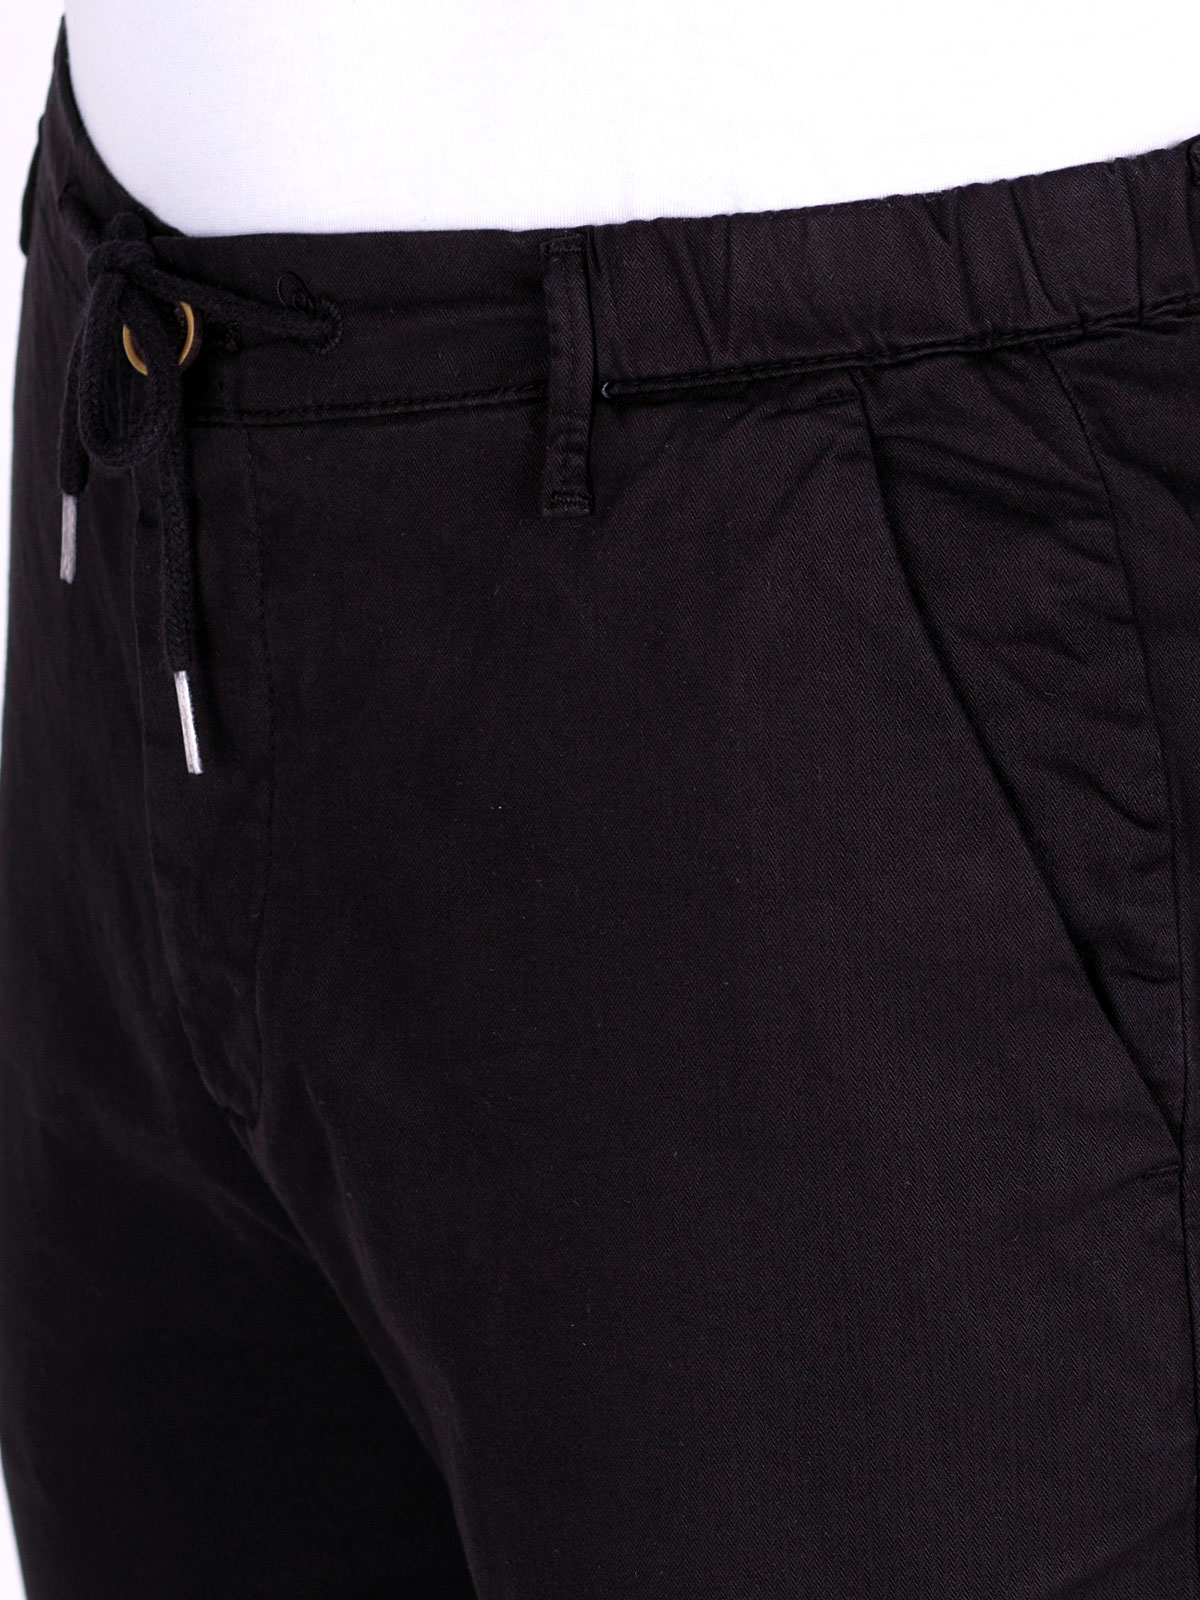 Παντελόνι σε μαύρο χρώμα με κορδόνια - 60284 € 61.30 img2